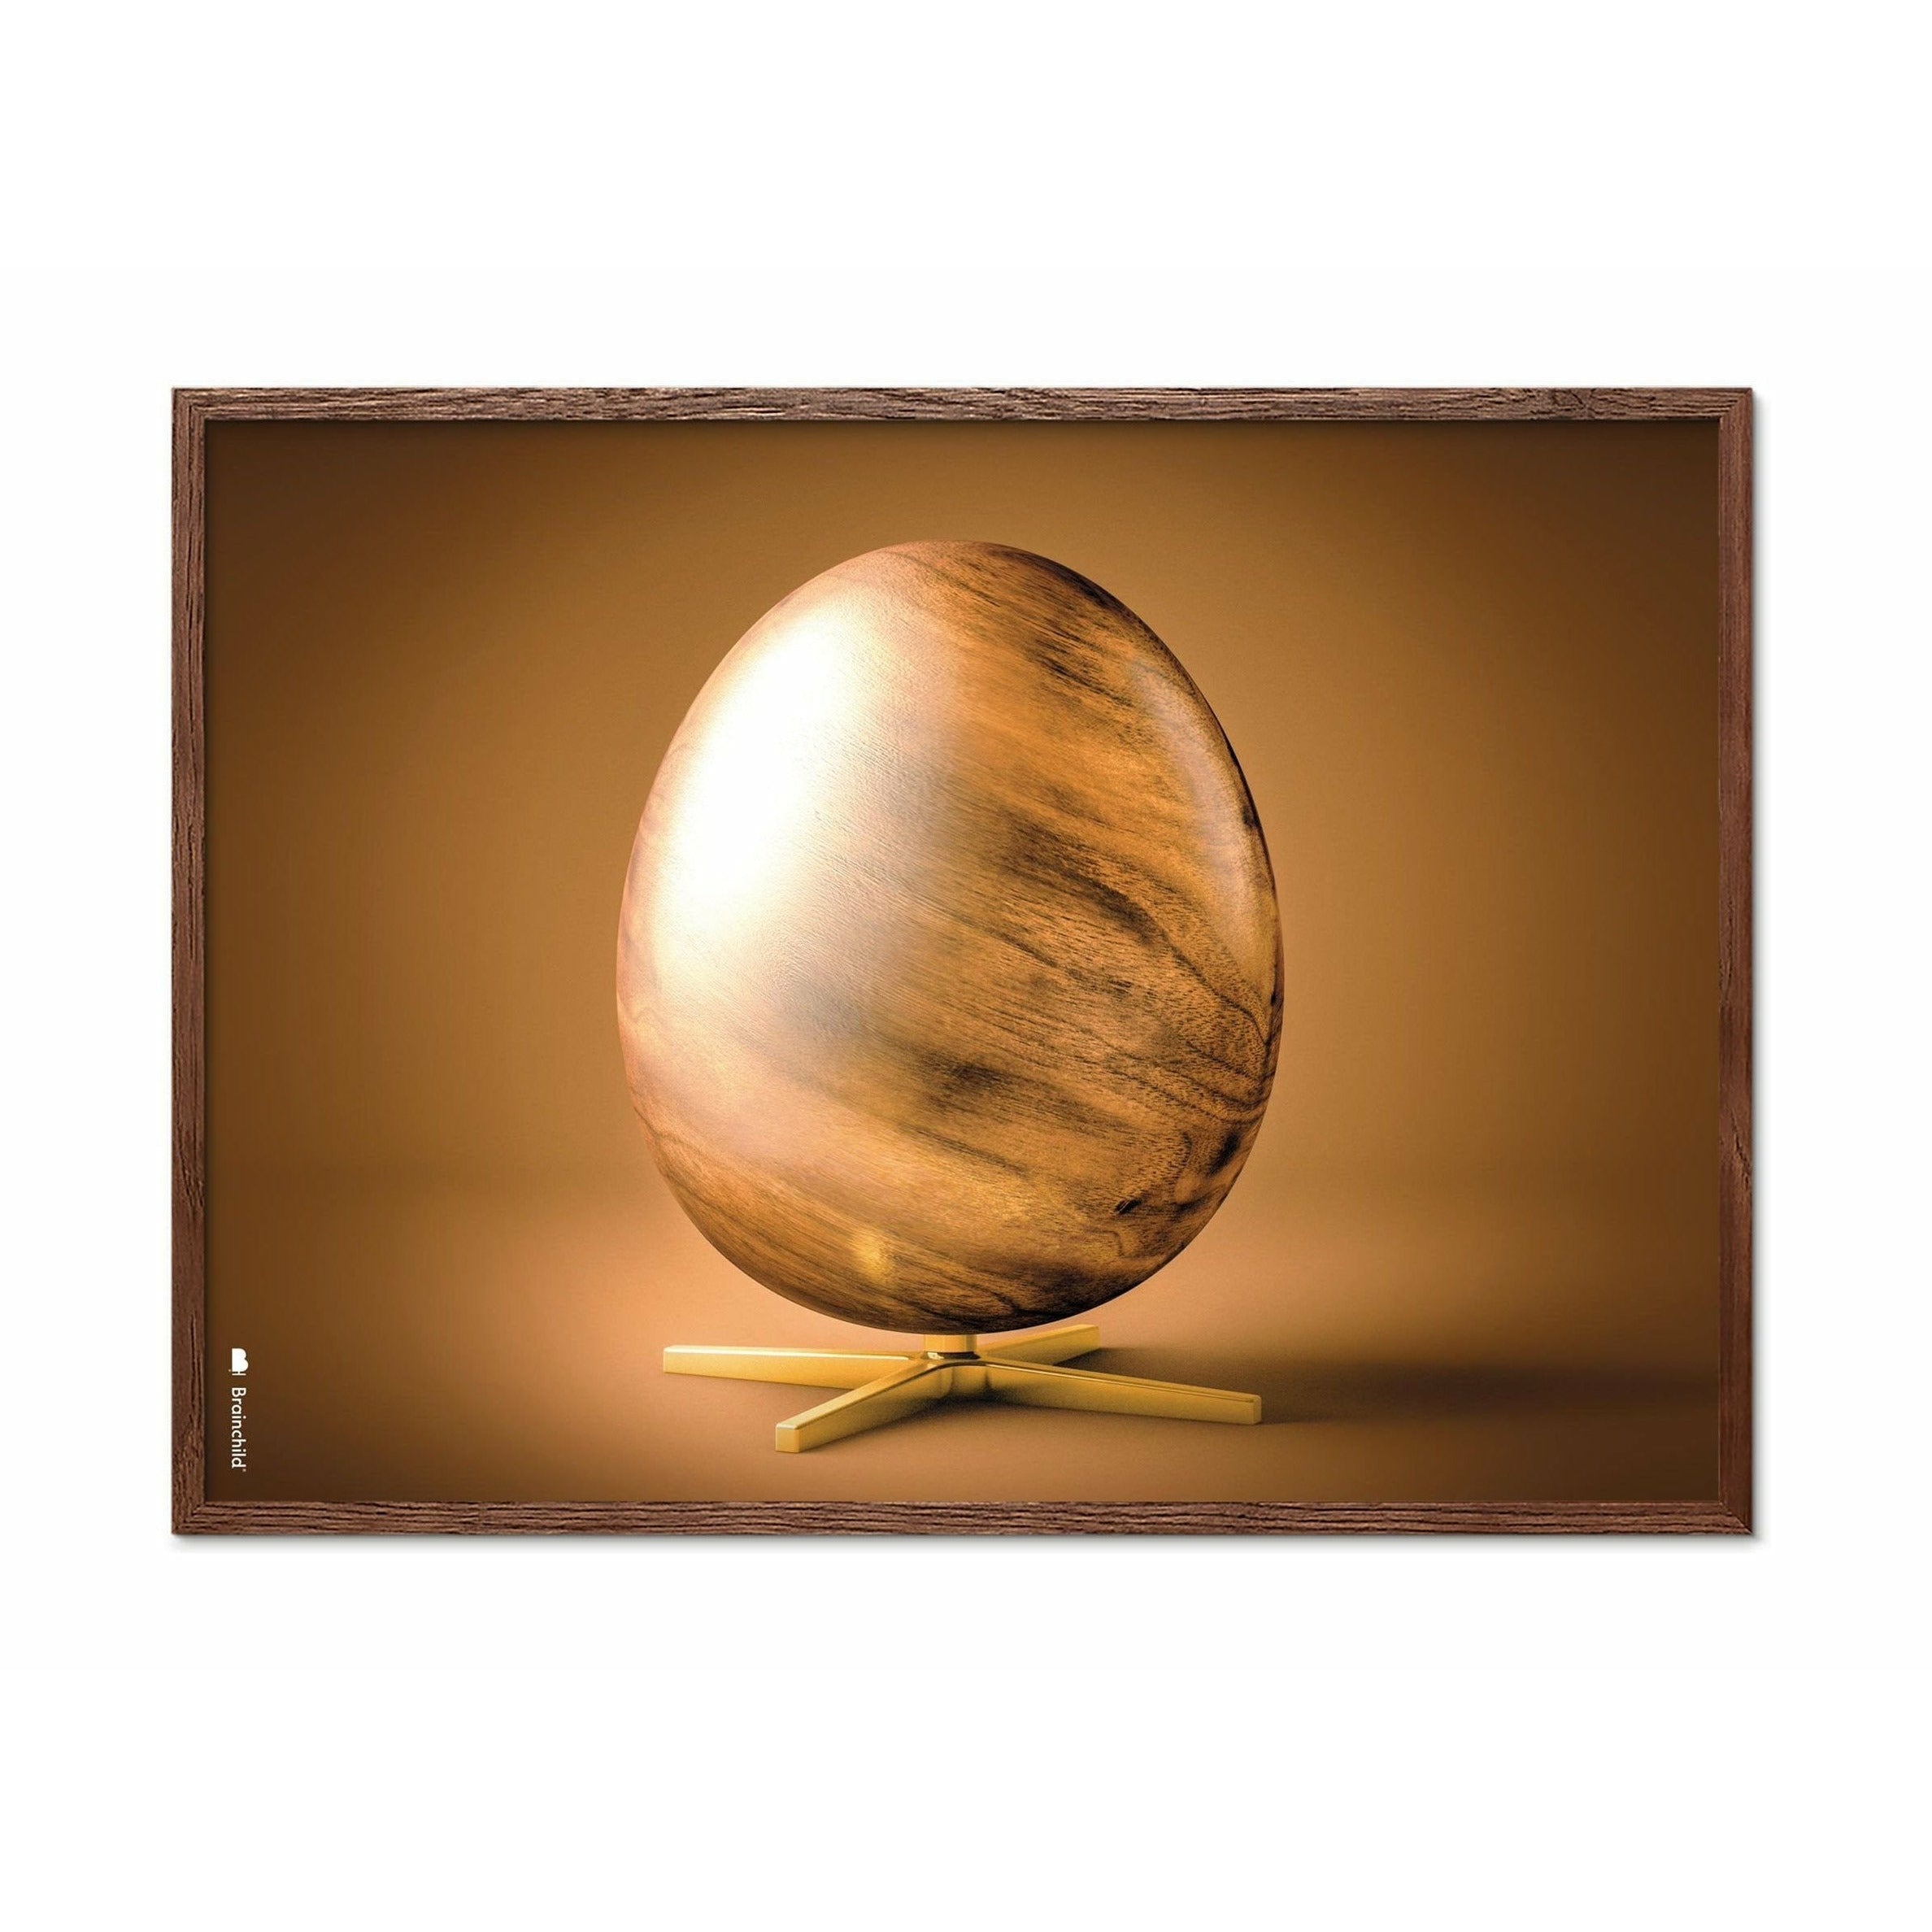 Poster in formato croce di uovo di prima cosa, telaio in legno scuro 30x40 cm, marrone